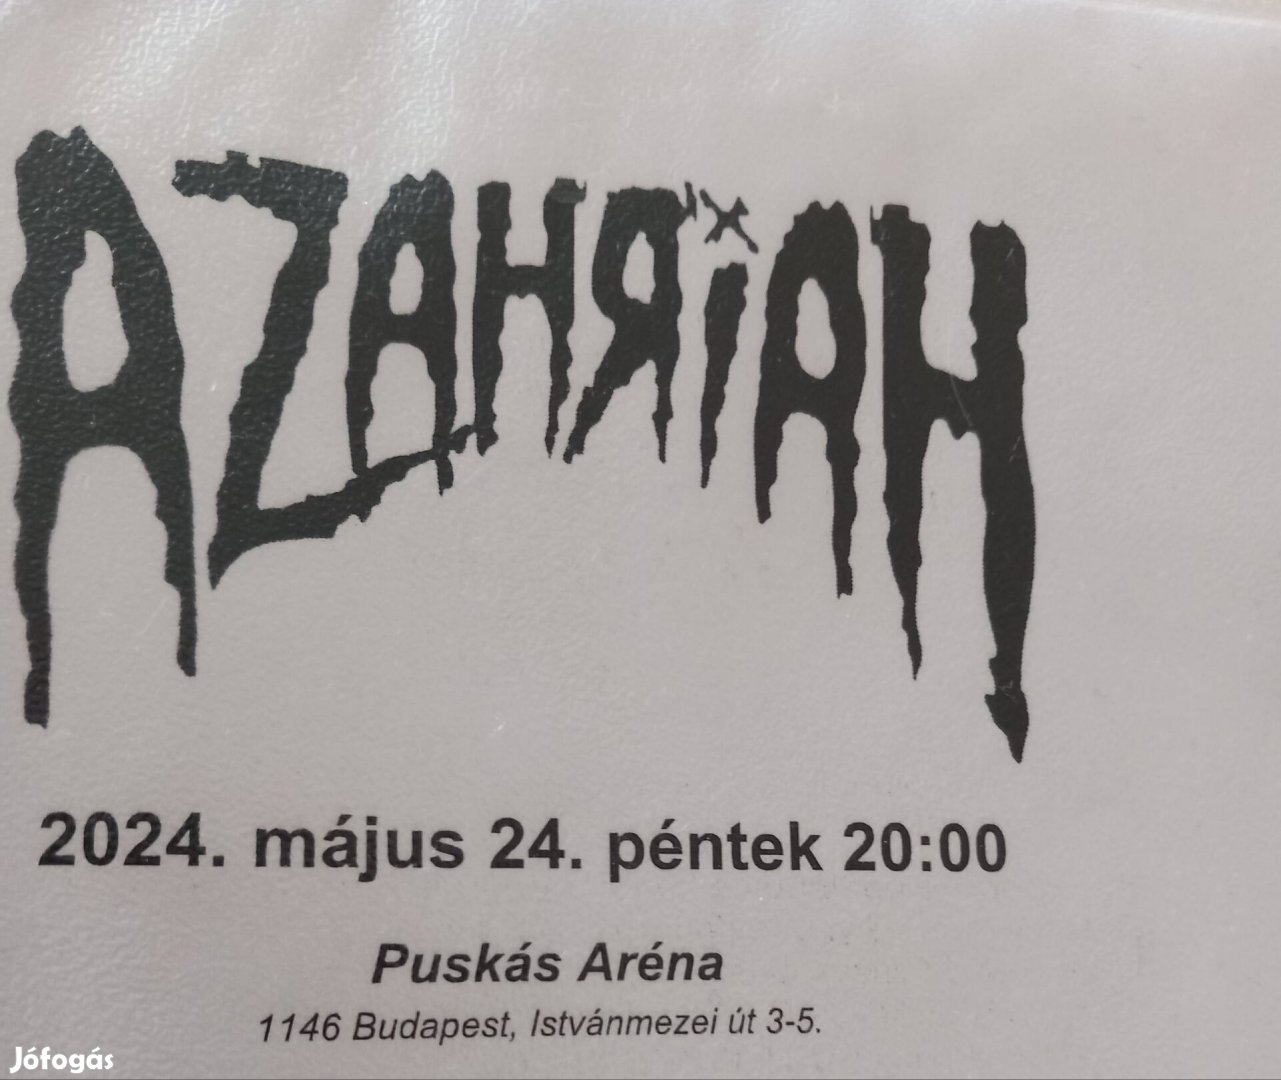 Azahriah koncert 2db ülő jegy 